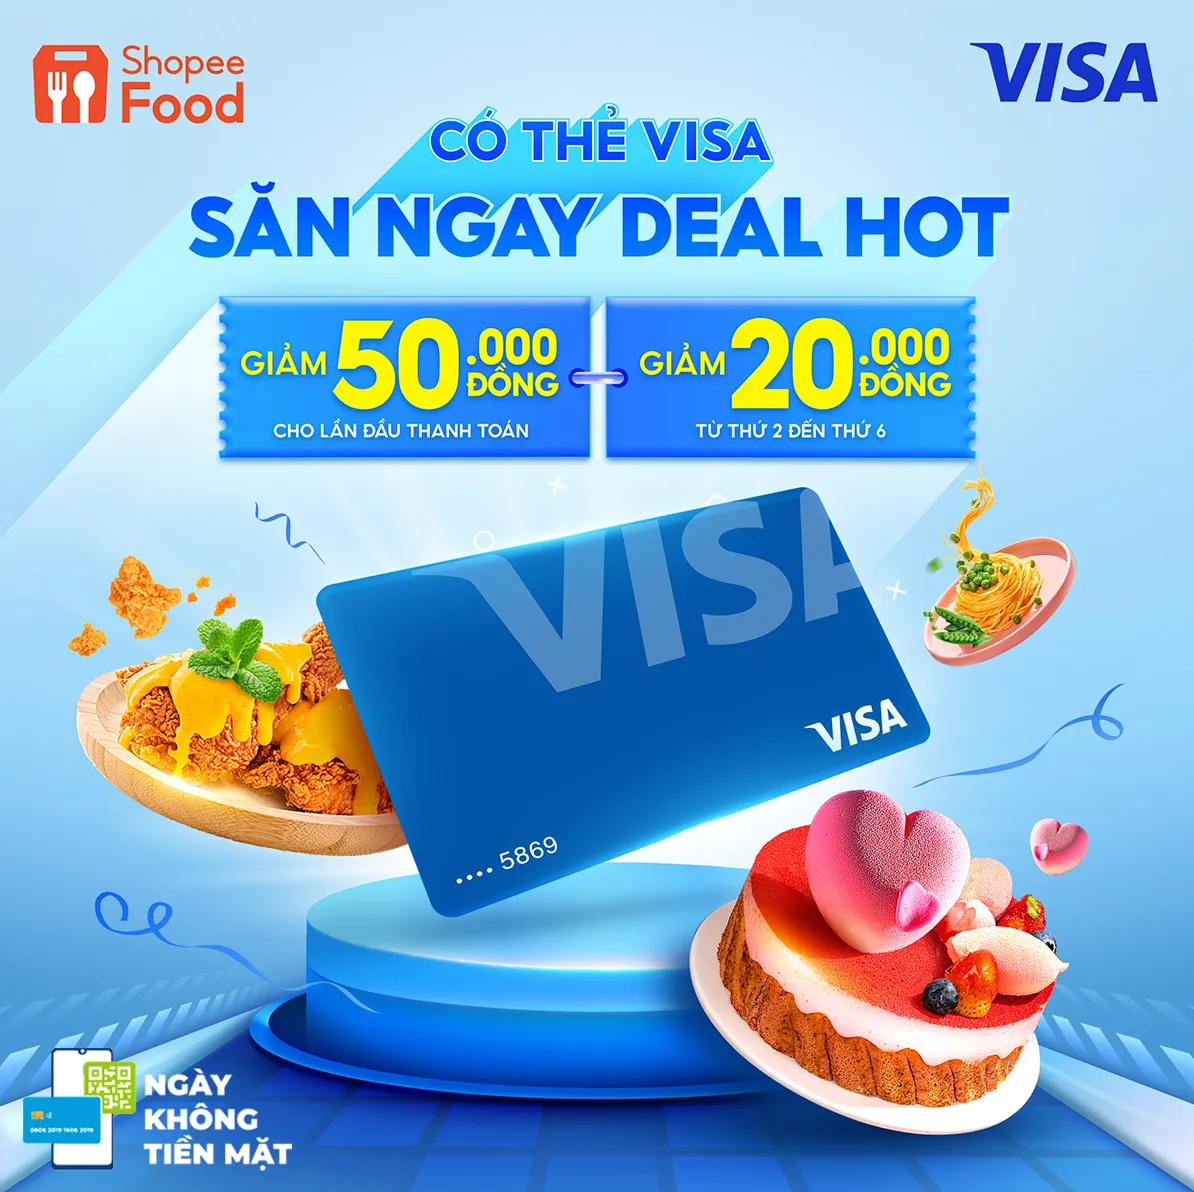 Visa đồng hành cùng chuỗi sự kiện “Ngày không tiền mặt” lần thứ 5, thúc đẩy  chuyển đổi số tại Việt Nam